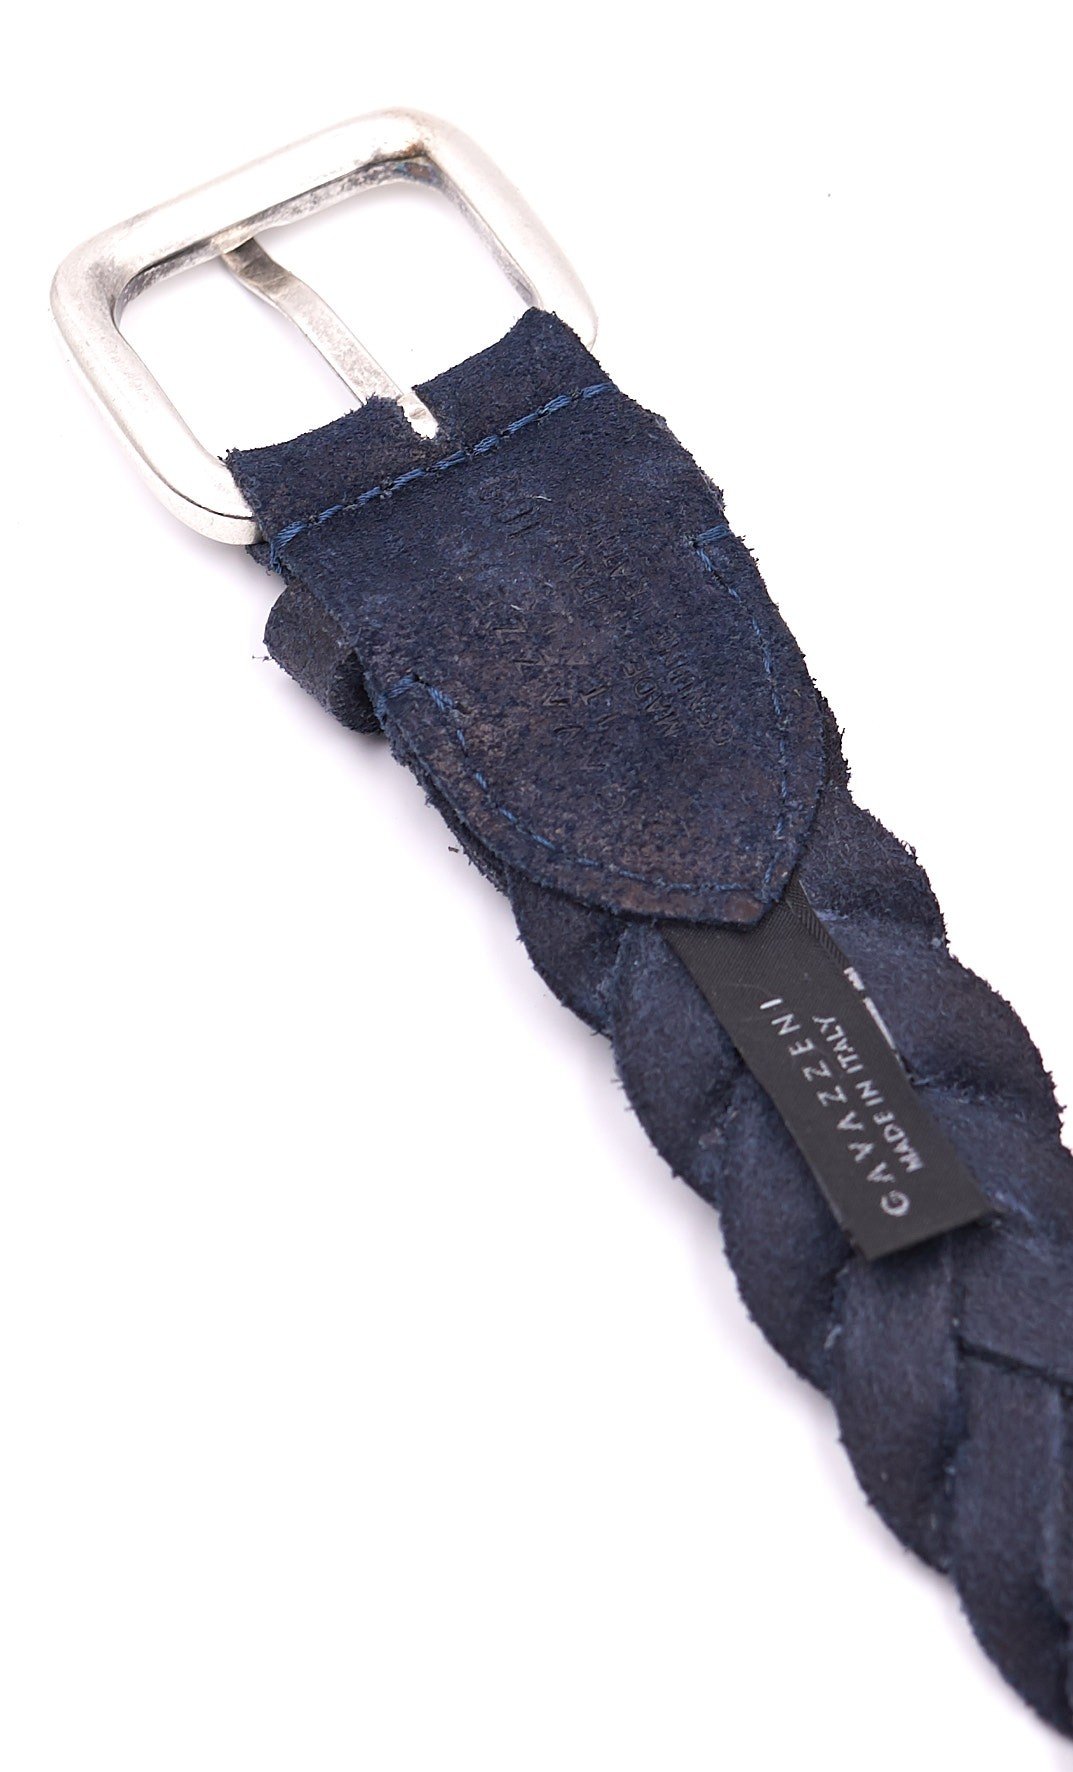 Cintura in pelle intrecciata blu con inserti – Giorgio1958